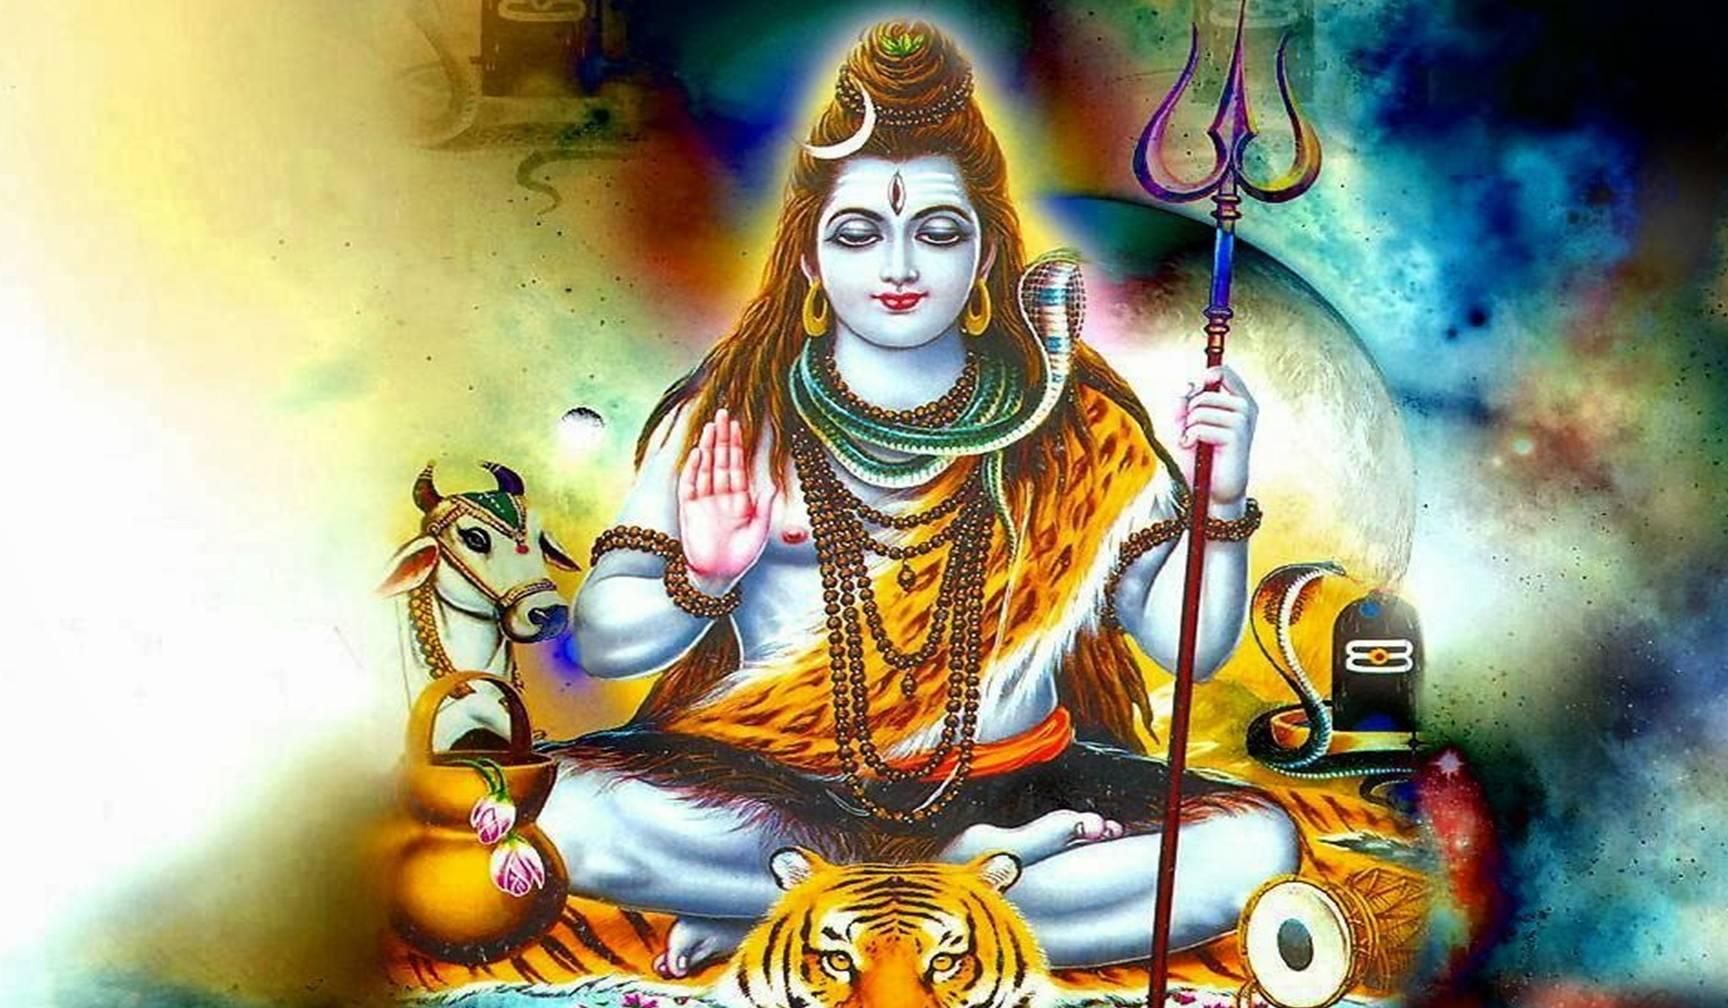 भगवान शिव के अदभुत चमत्कार के बारें जानें